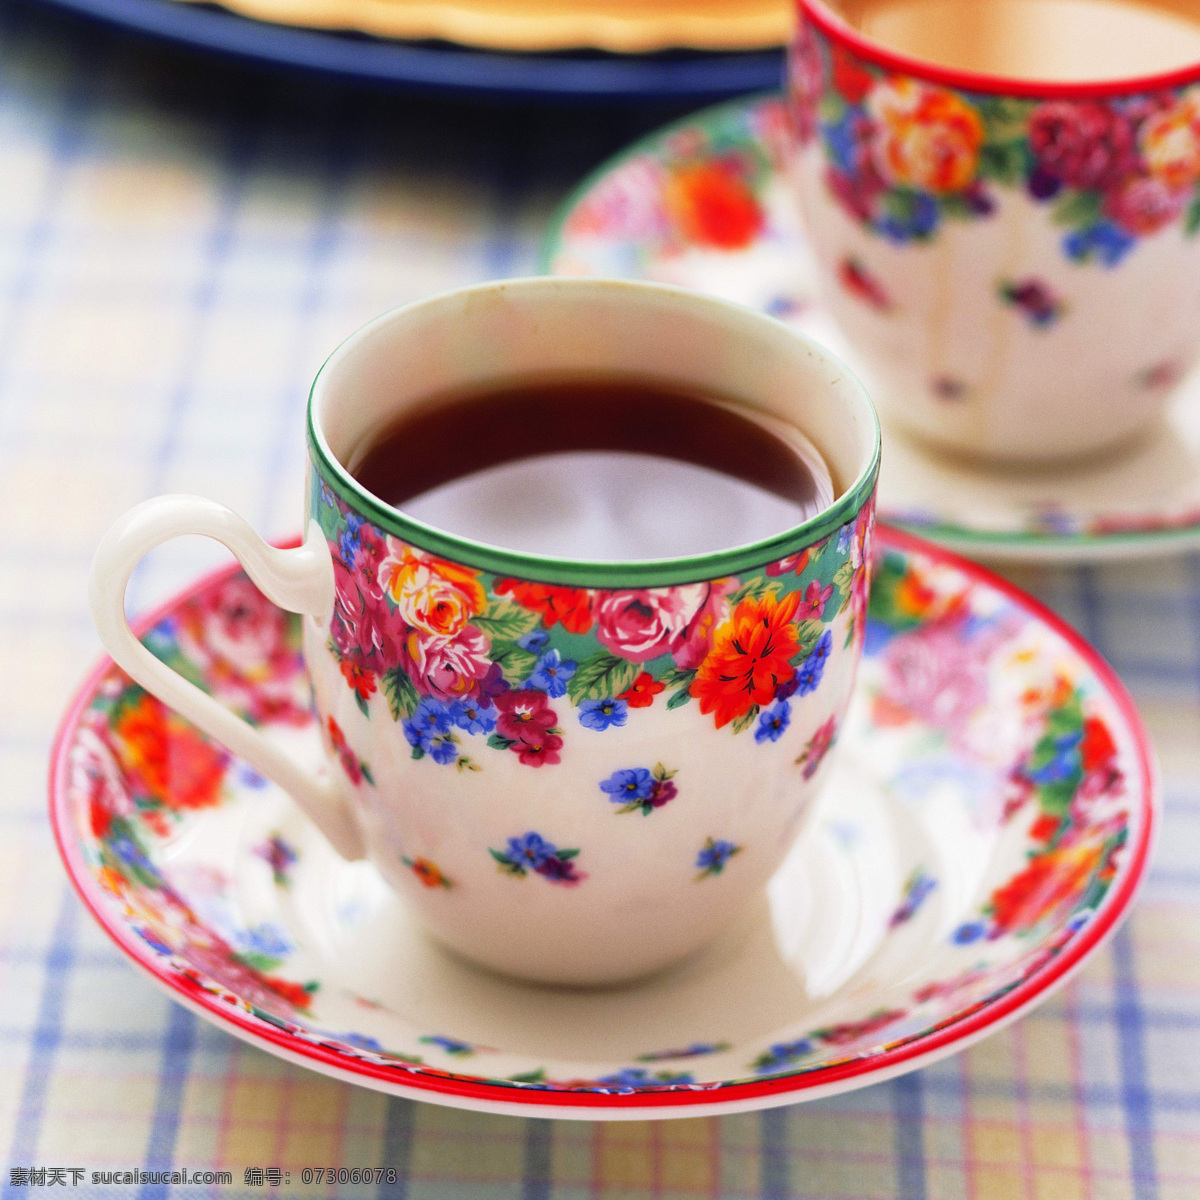 茶艺 茶具 瓷茶具 设计图 生活百科 餐饮美食图片 白色